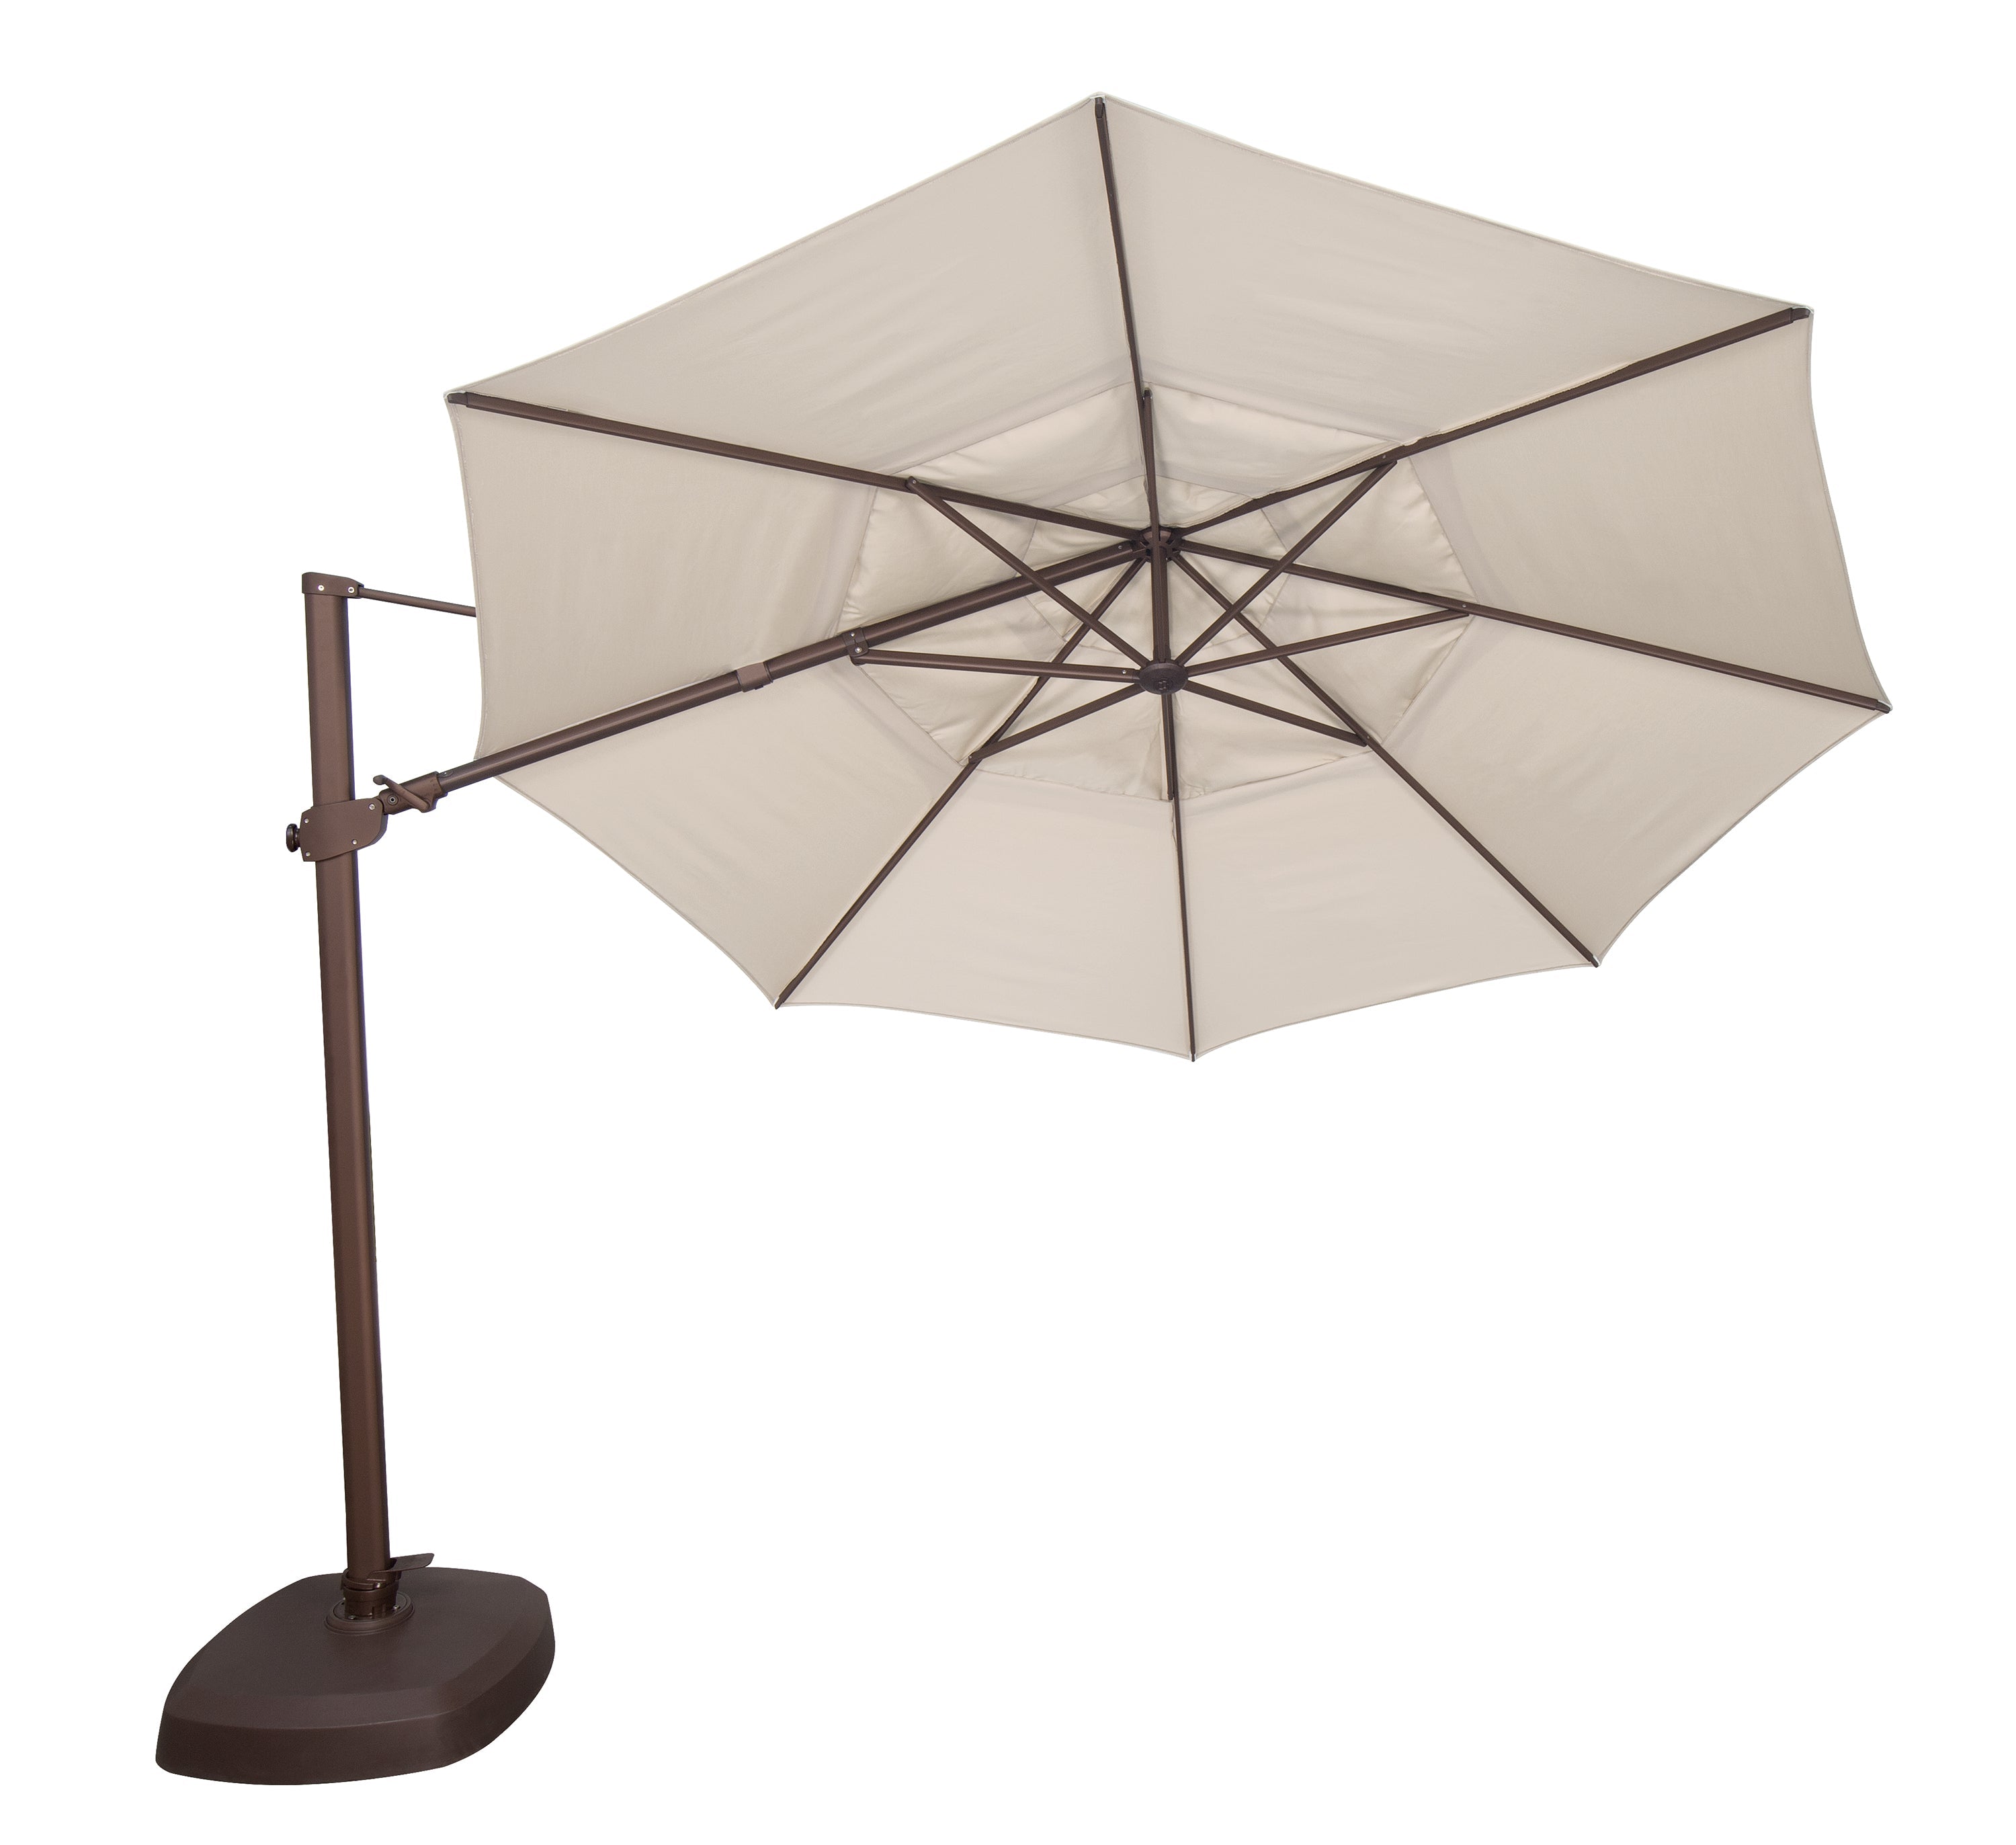 11.5' Octagonal Cantilever Umbrella